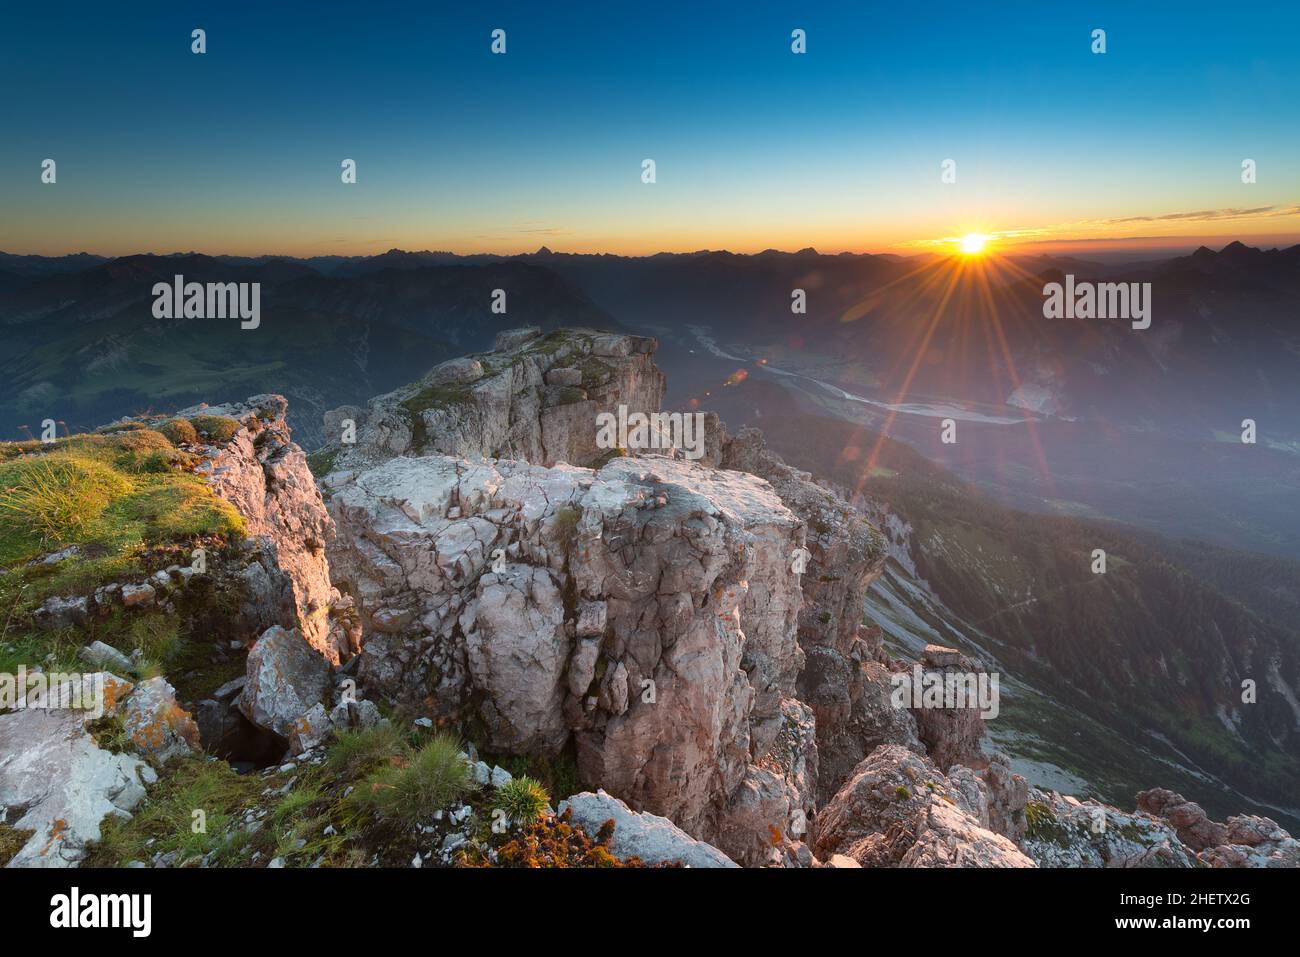 Beleuchtete Felsen auf dem Gipfel des Berges bei stimmungsvollen Sonnenaufgängen Stockfoto